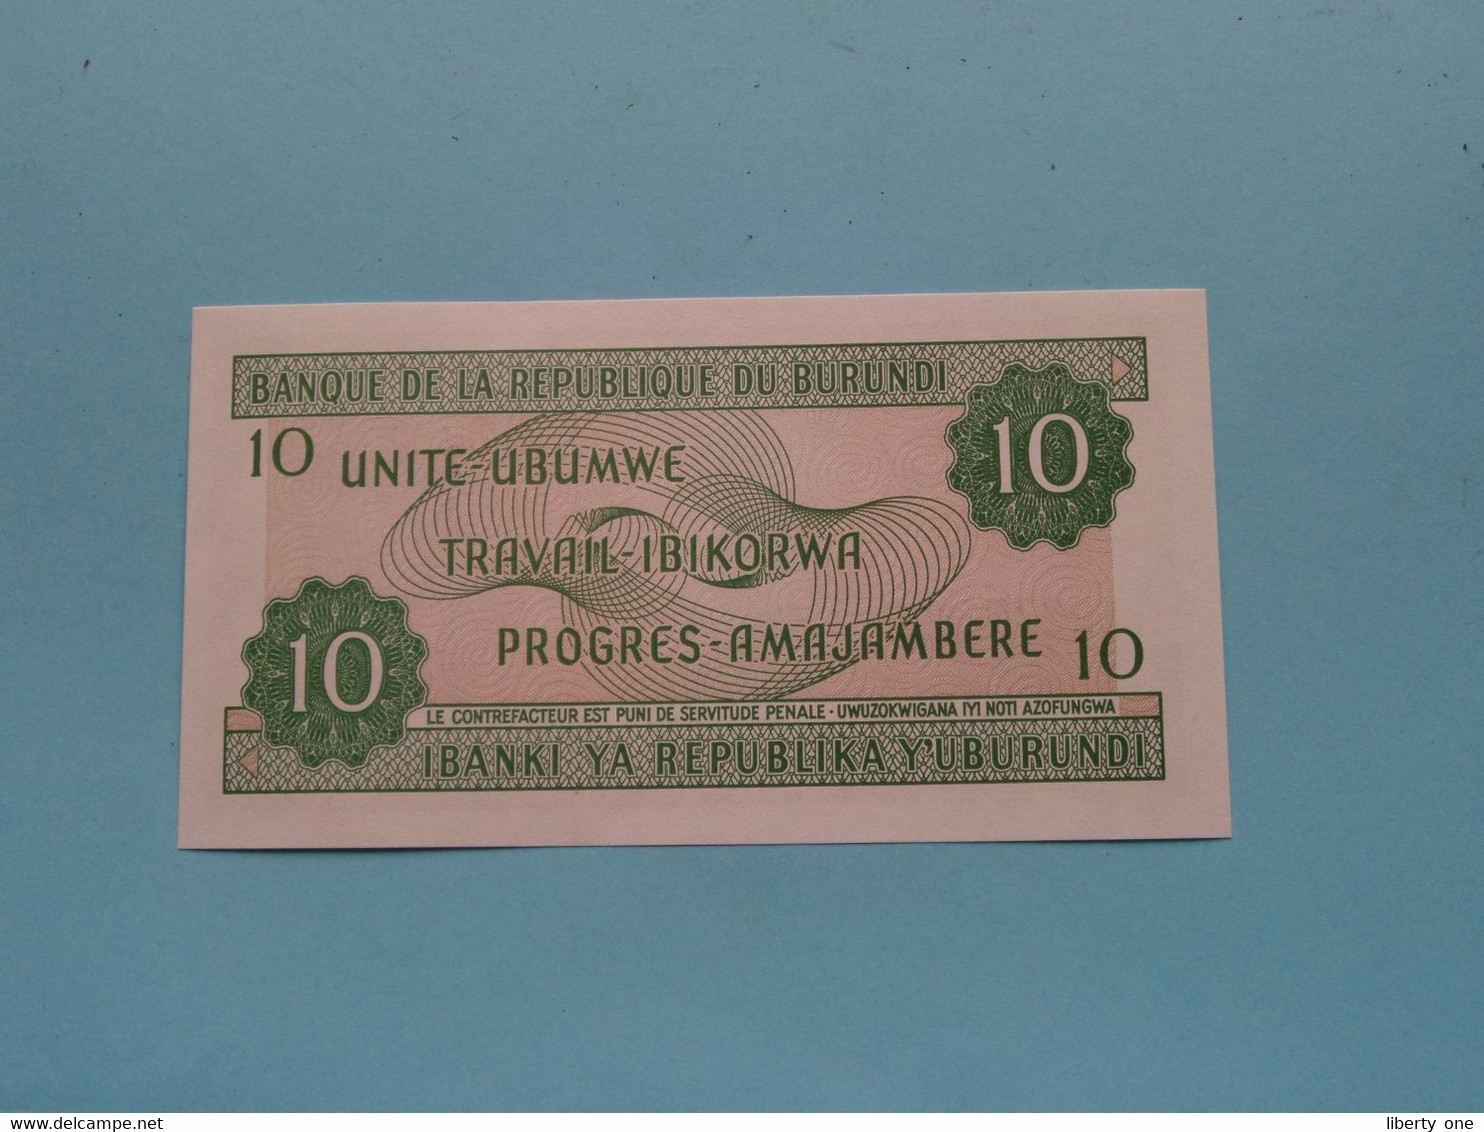 10 Francs ( Amafranga Cumi ) 01-07-2003 ( Republique Du Burundi ) UNC ( For Grade, Please See Photo ) ! - Malawi